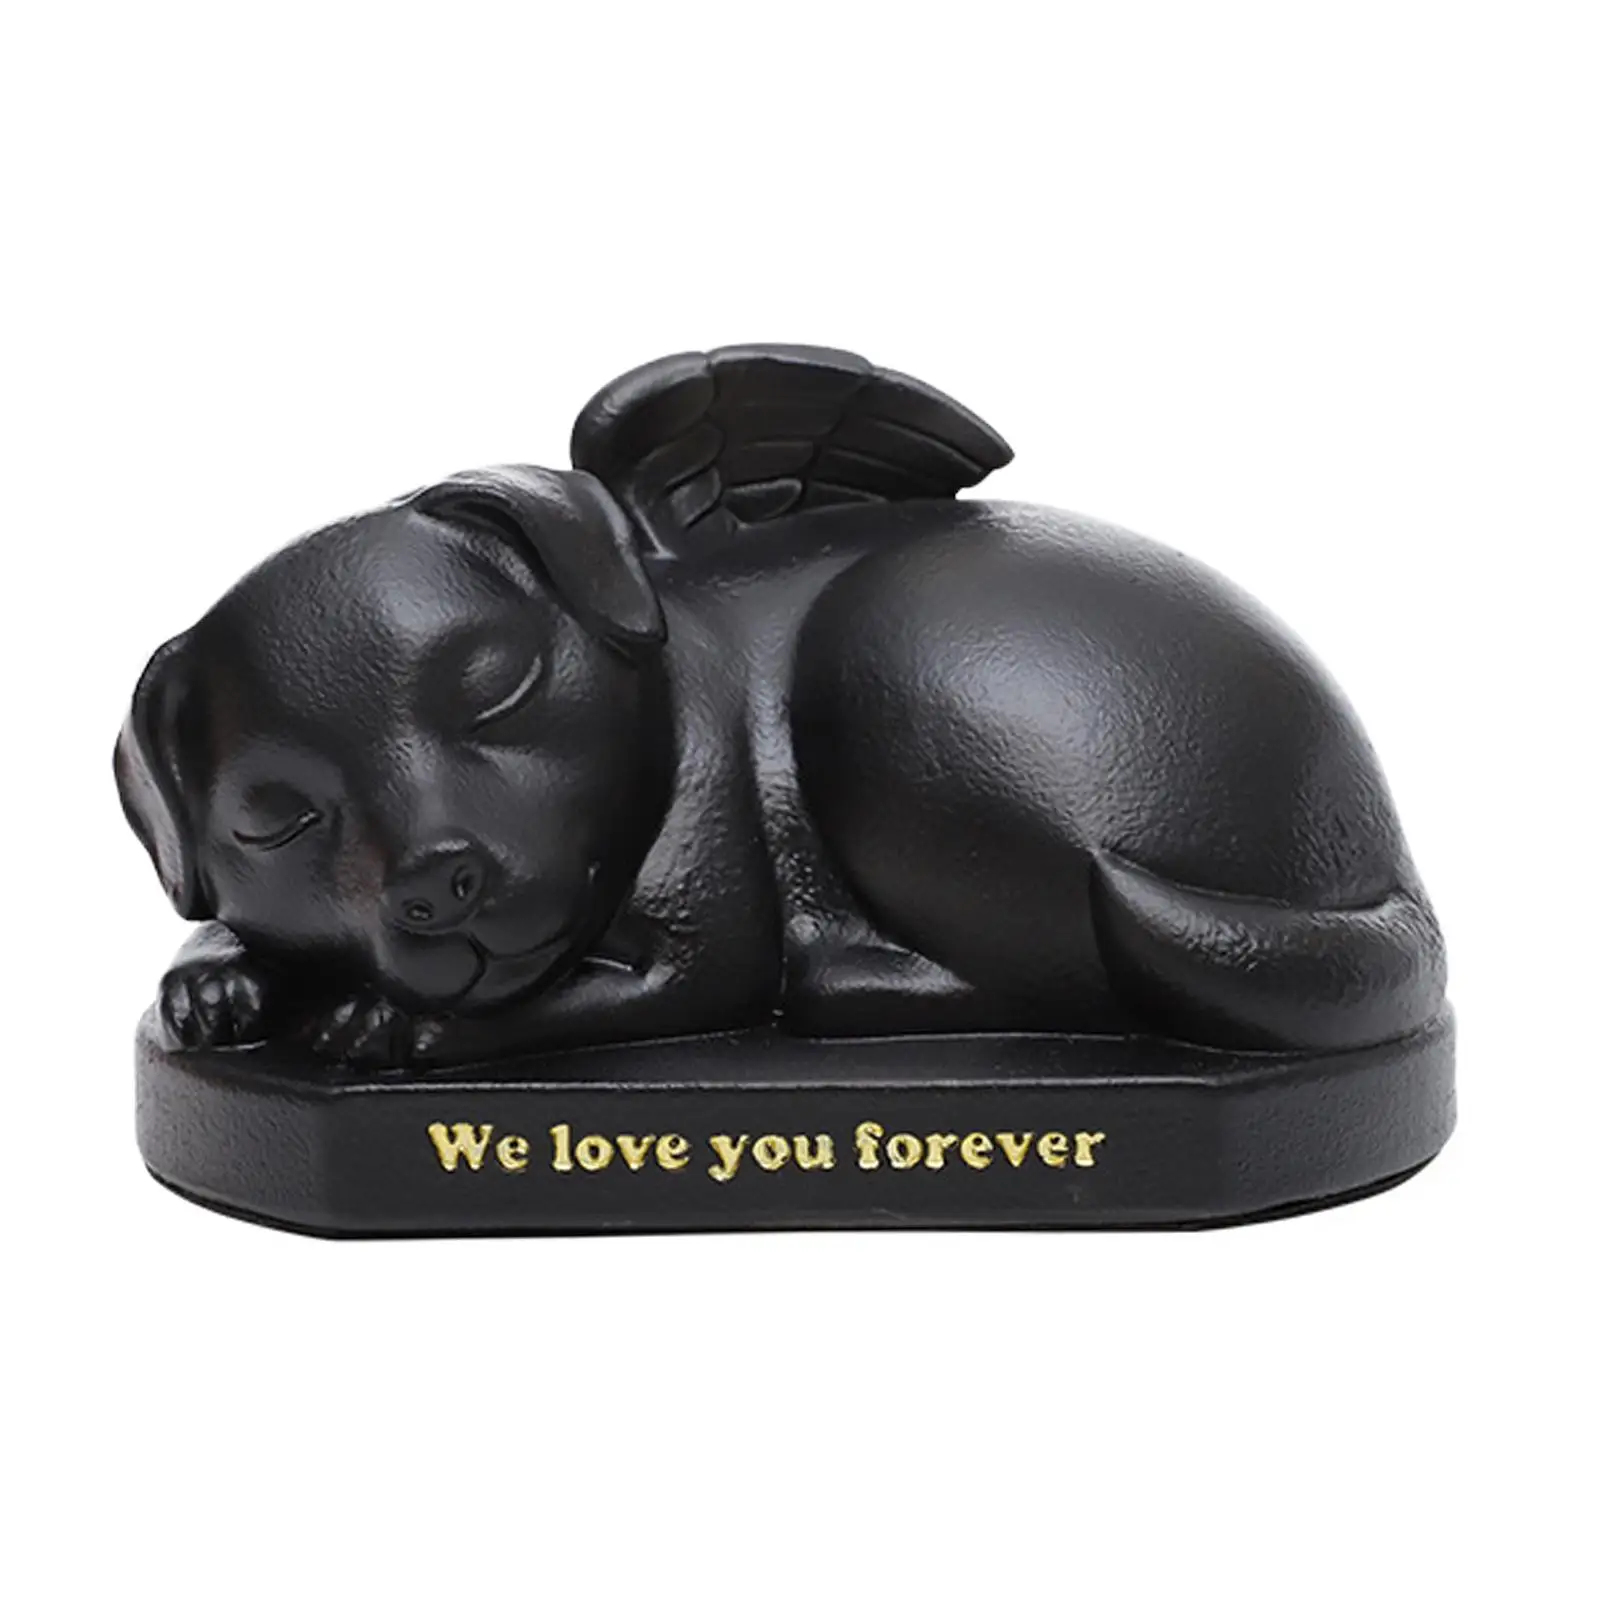 Cremation Memorial Urn Pet Urn Pet Supplies Small Animal Keepsake Case Sleeping